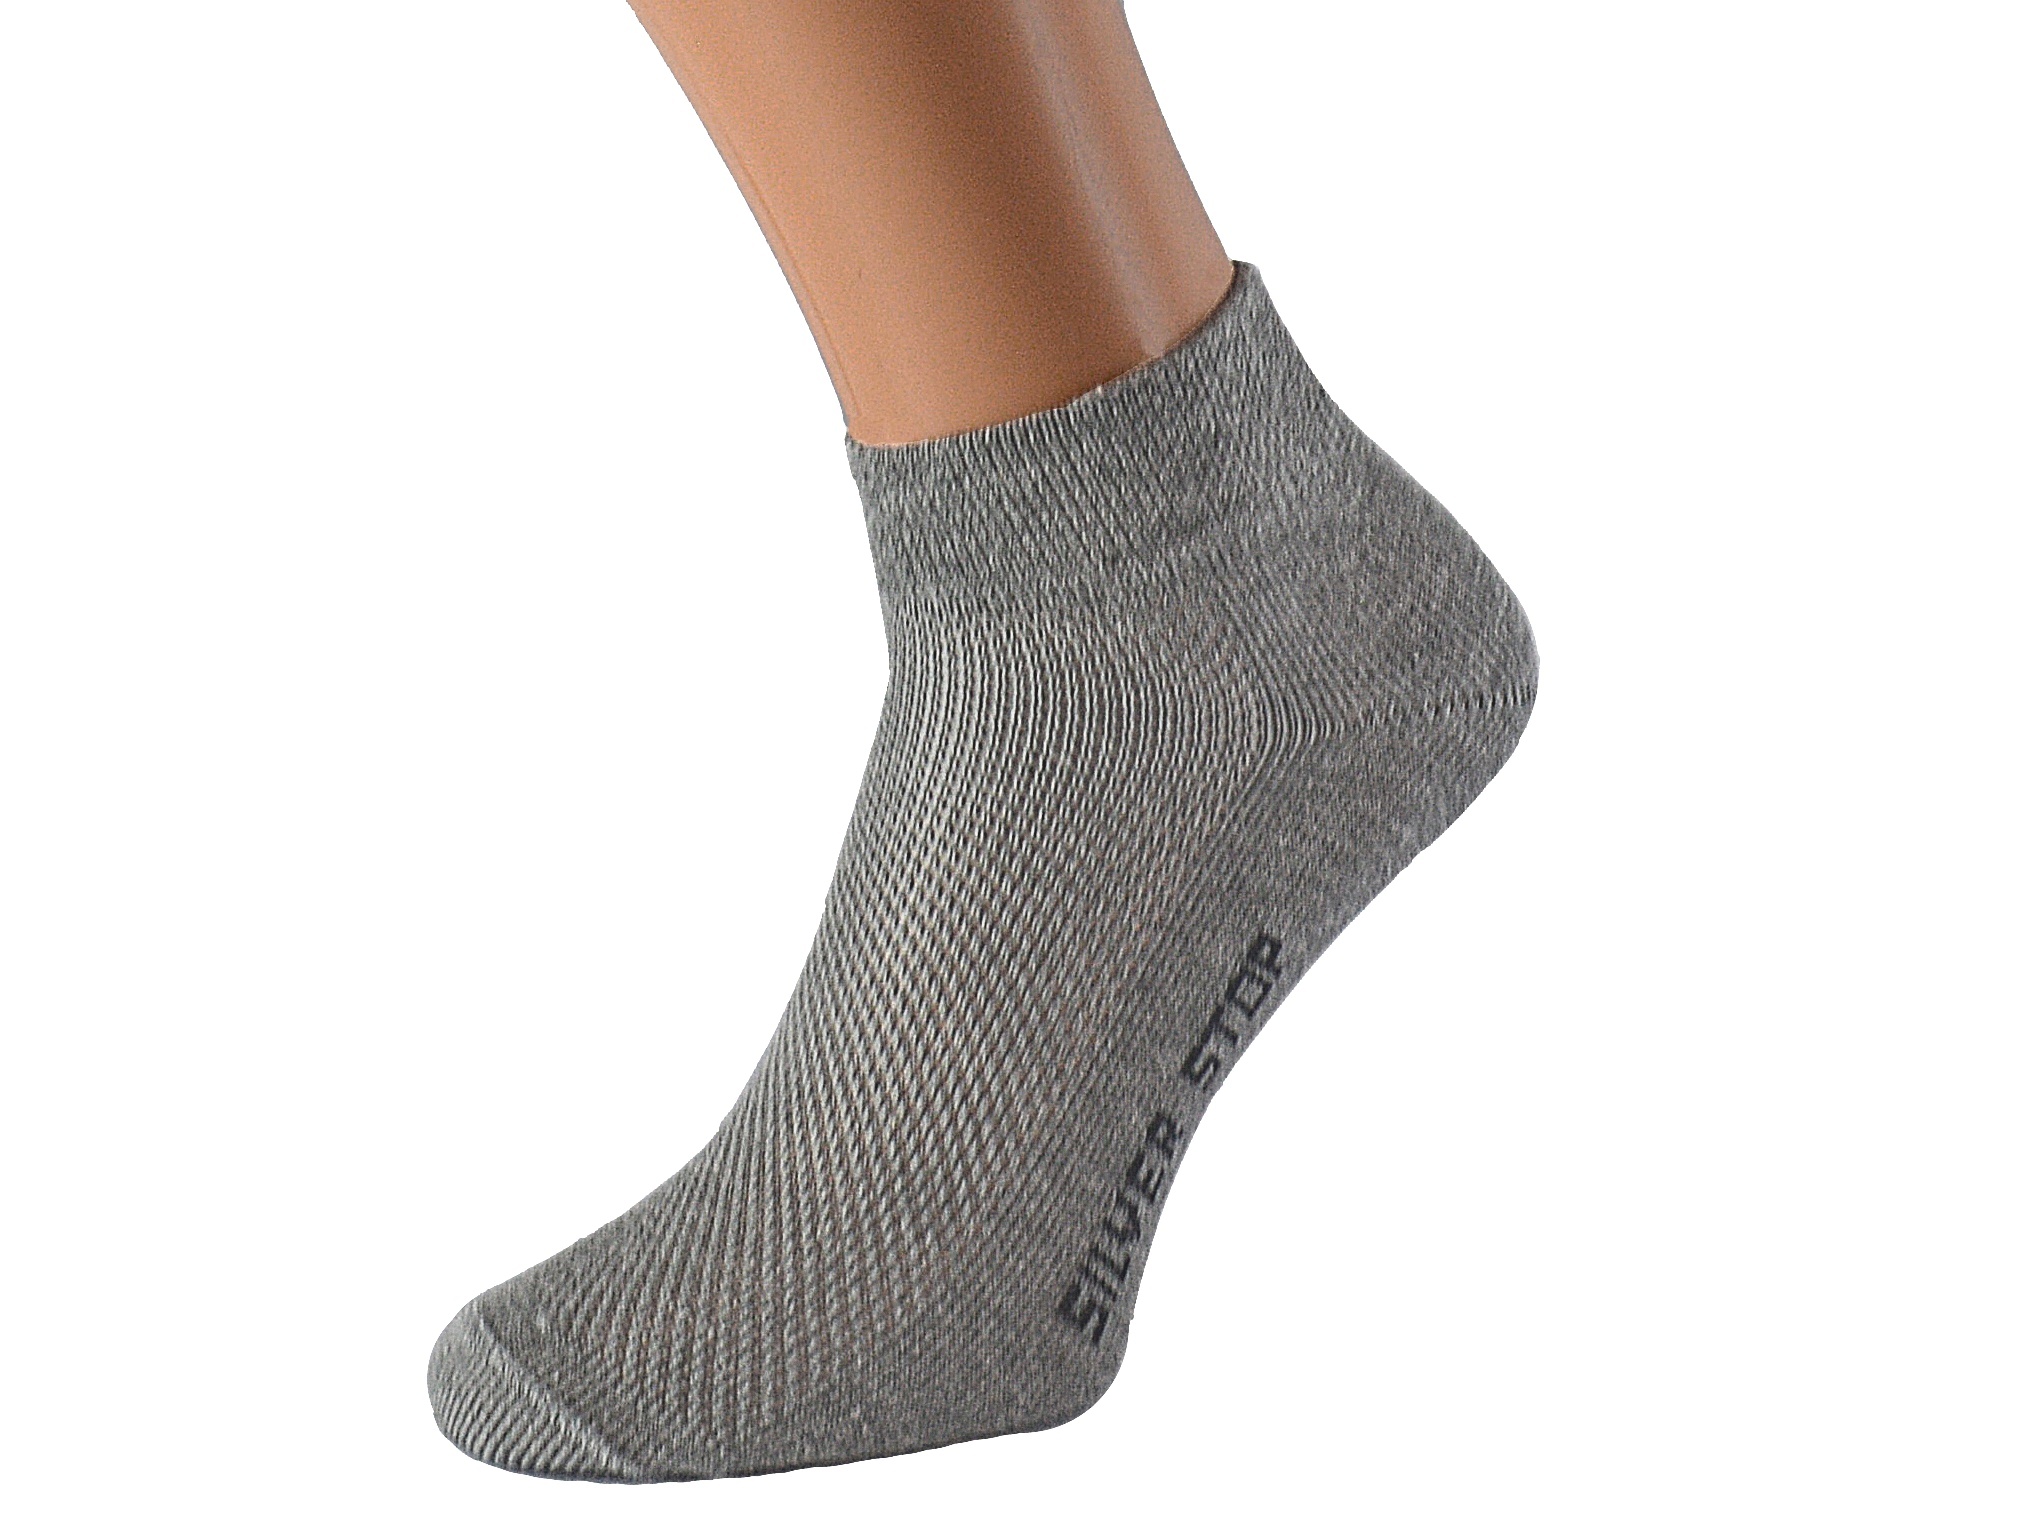 Kotníkové ponožky se stříbrem KRADANA KUKS Barva: Světle šedé, Velikost: EUR 43-45 (UK 9-10)